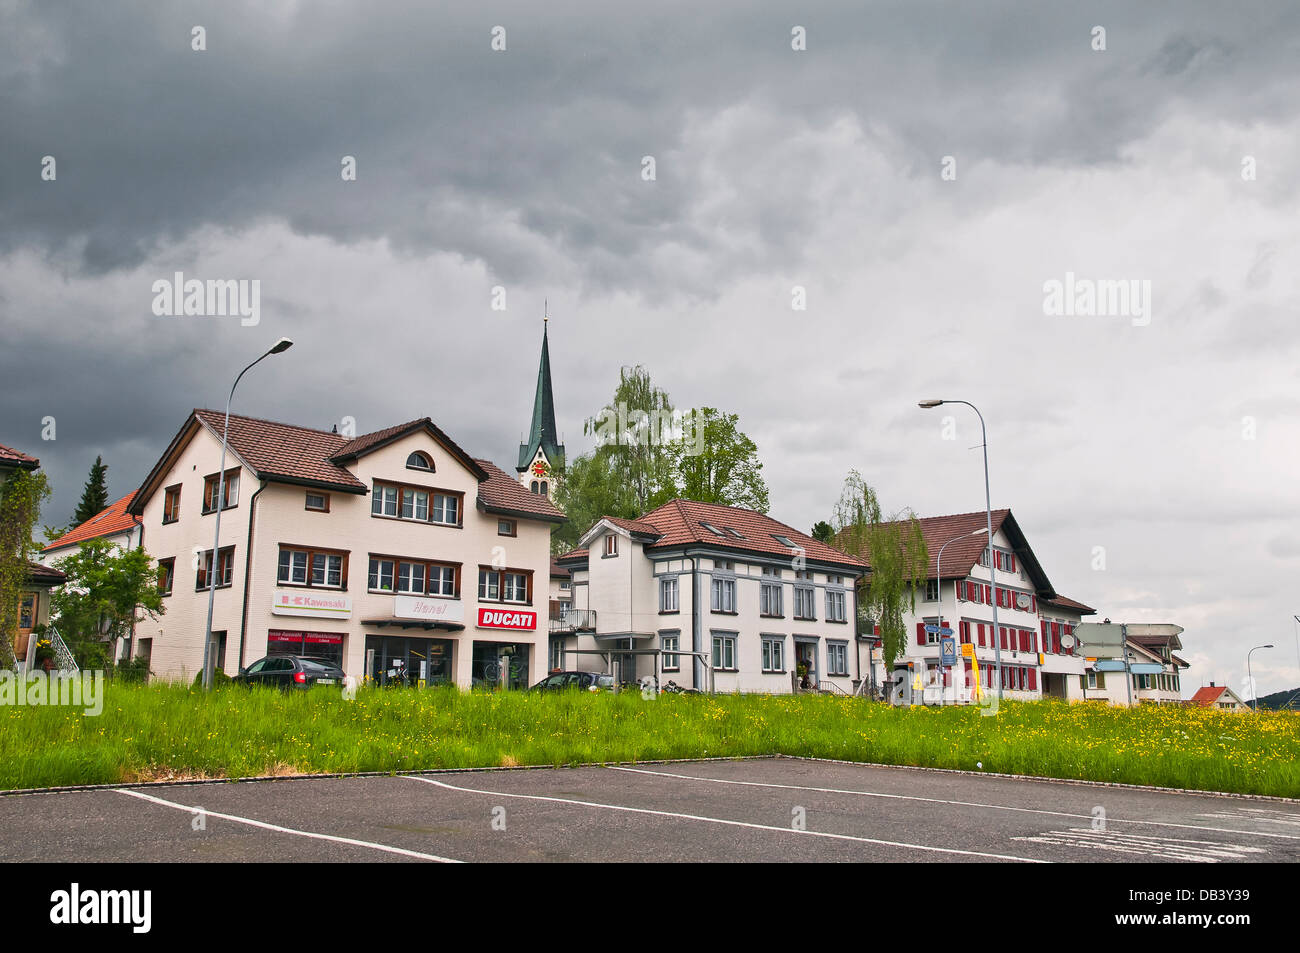 Stein village near Cheese factory in rainy weather, Stein Appenzell region, Switzerland Stock Photo